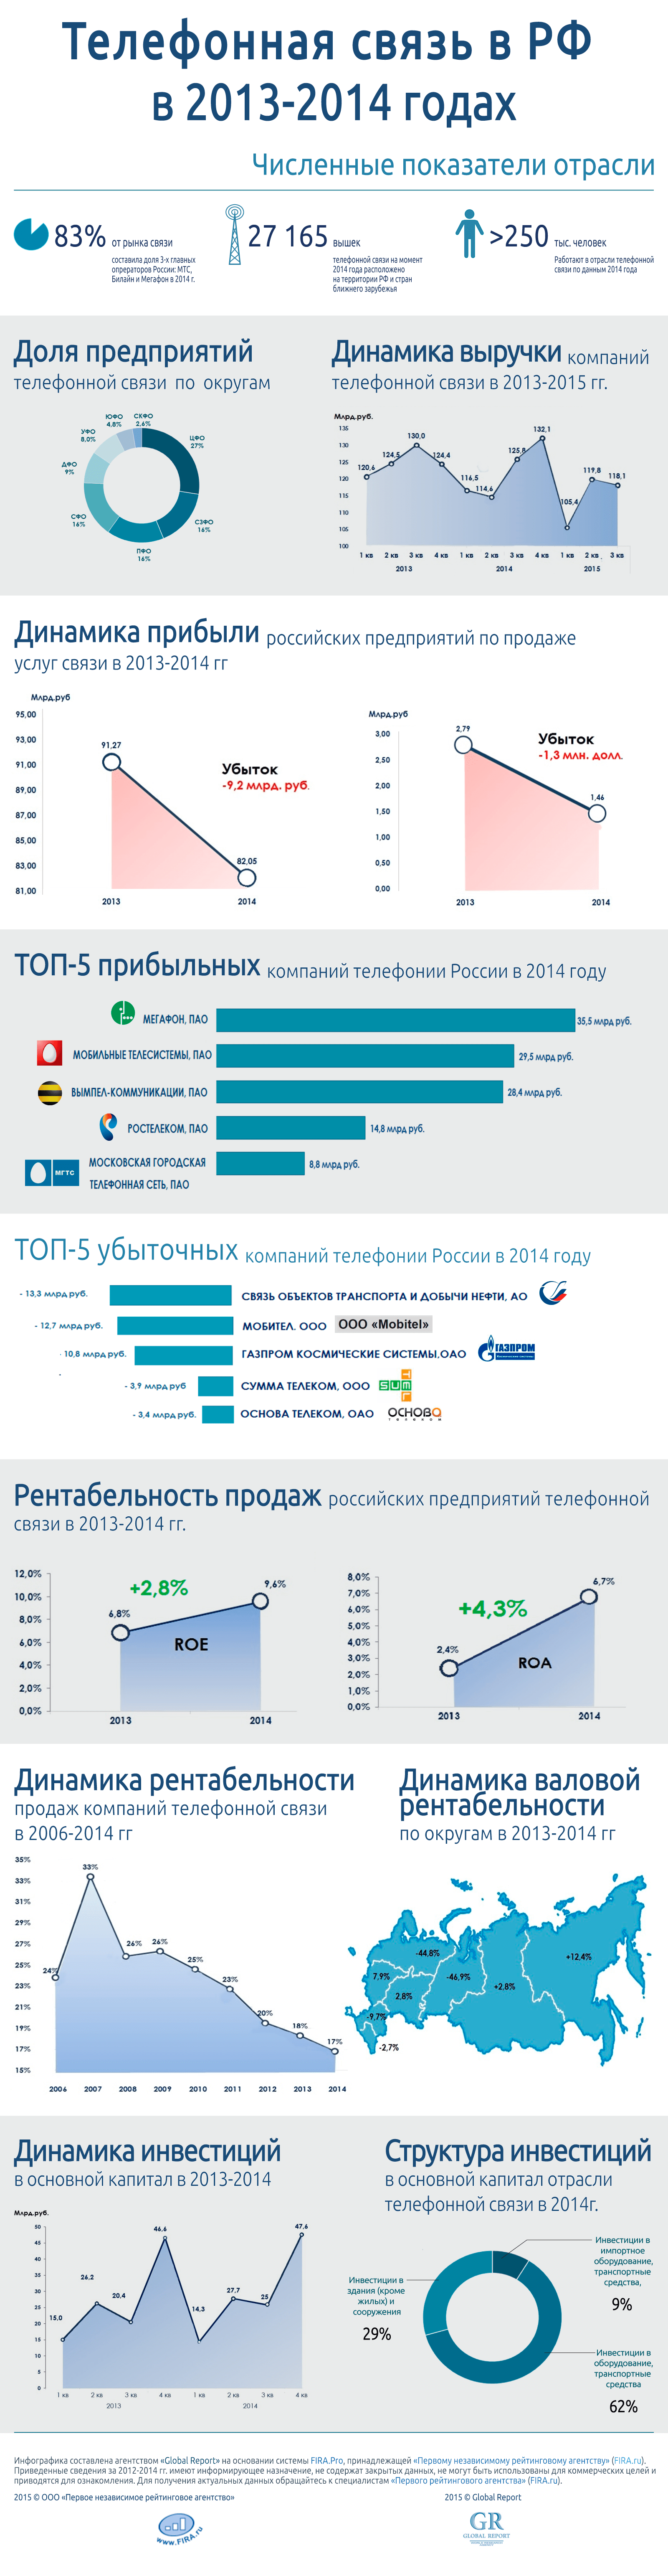 Деятельность в области телефонной связи в России в 2013-2014